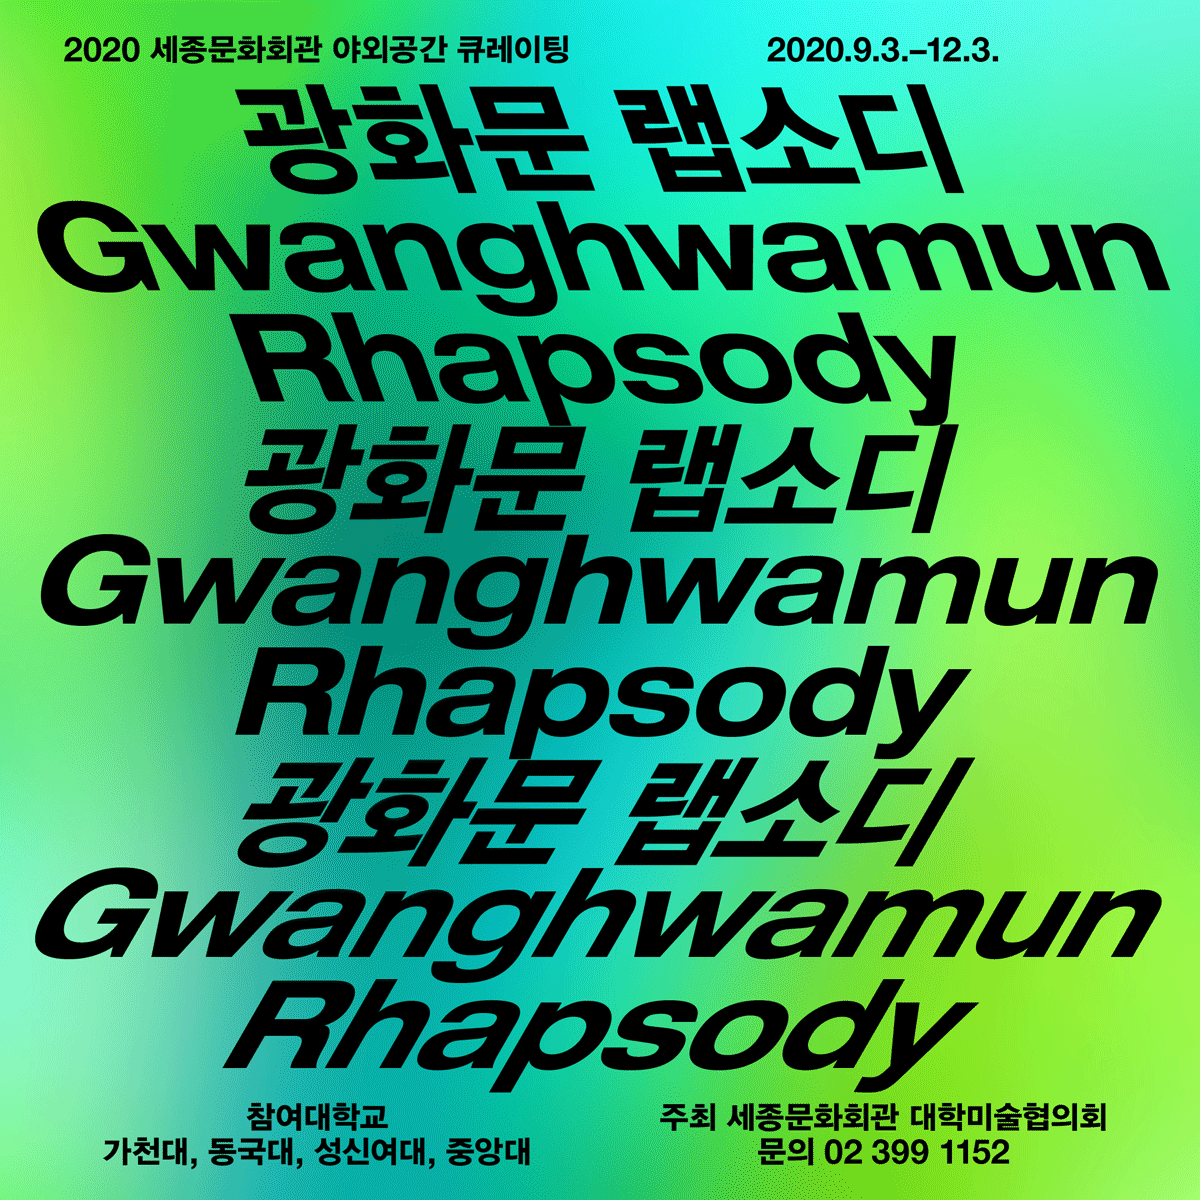 2020世宗文化會館戶外空間策展「光化門狂想曲 Gwanghwamun Rhapsody」